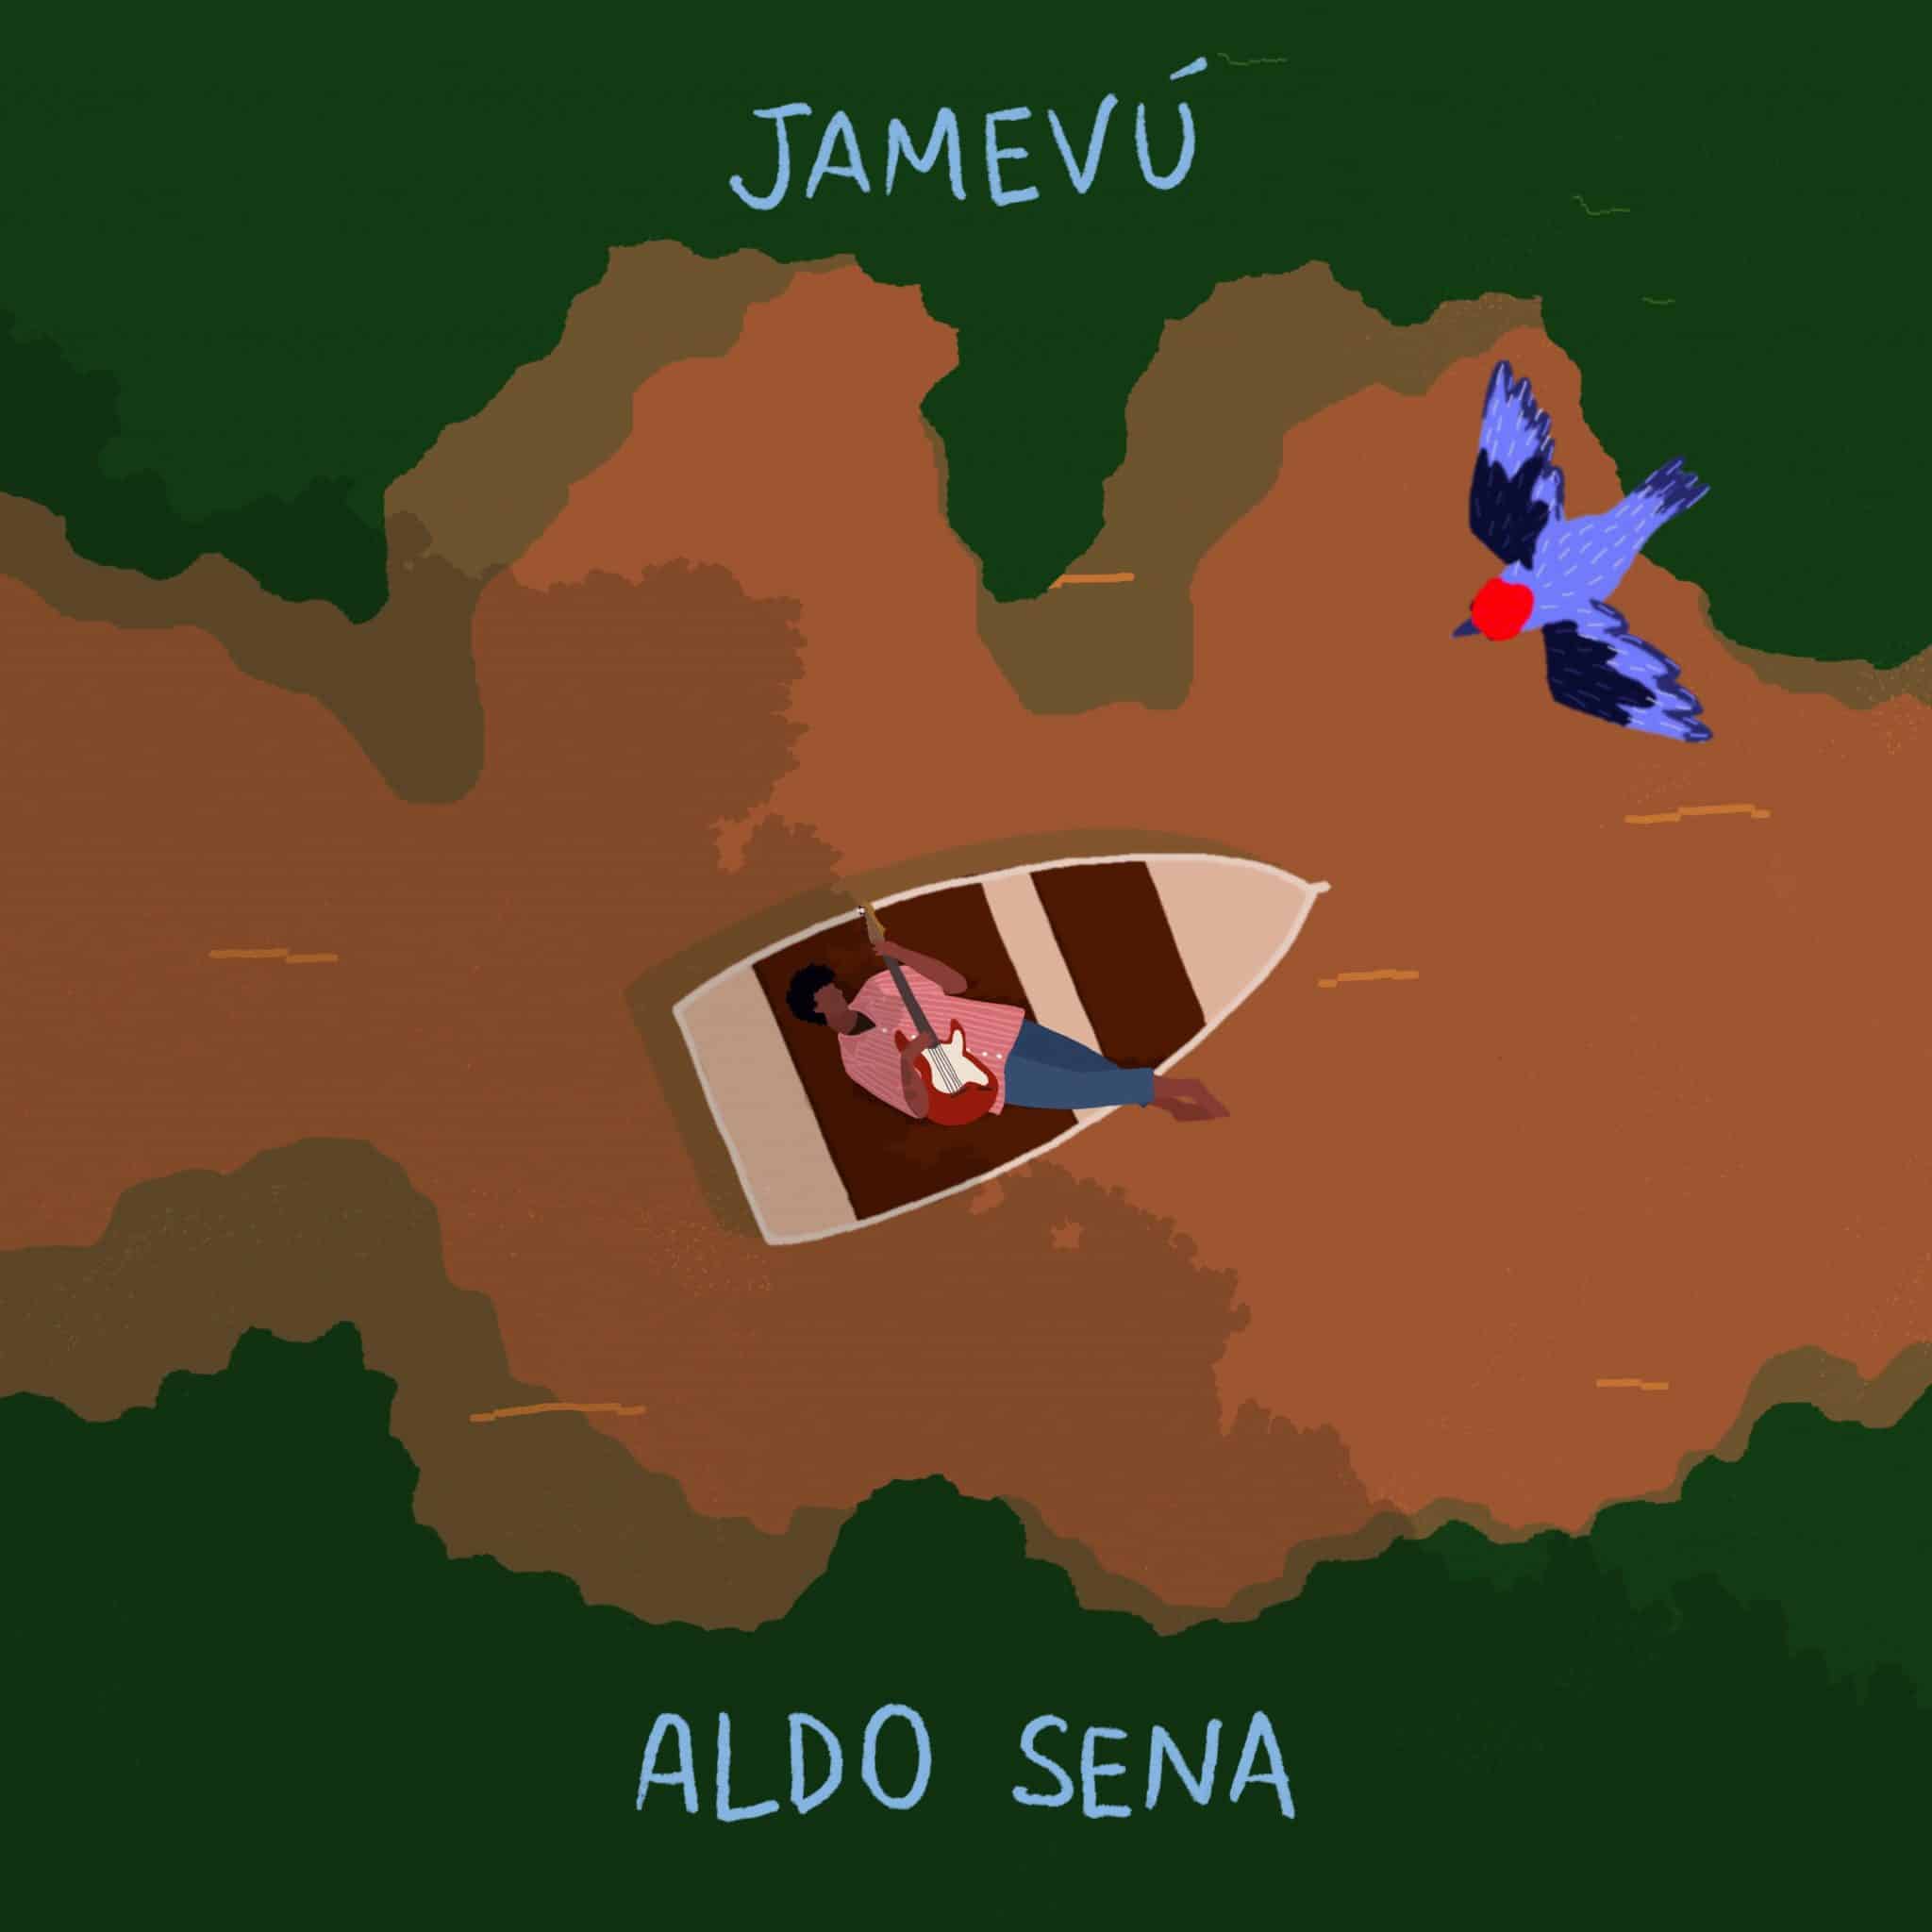 revistaprosaversoearte.com - 'Jamevú', álbum do mestre da guitarrada Aldo Sena